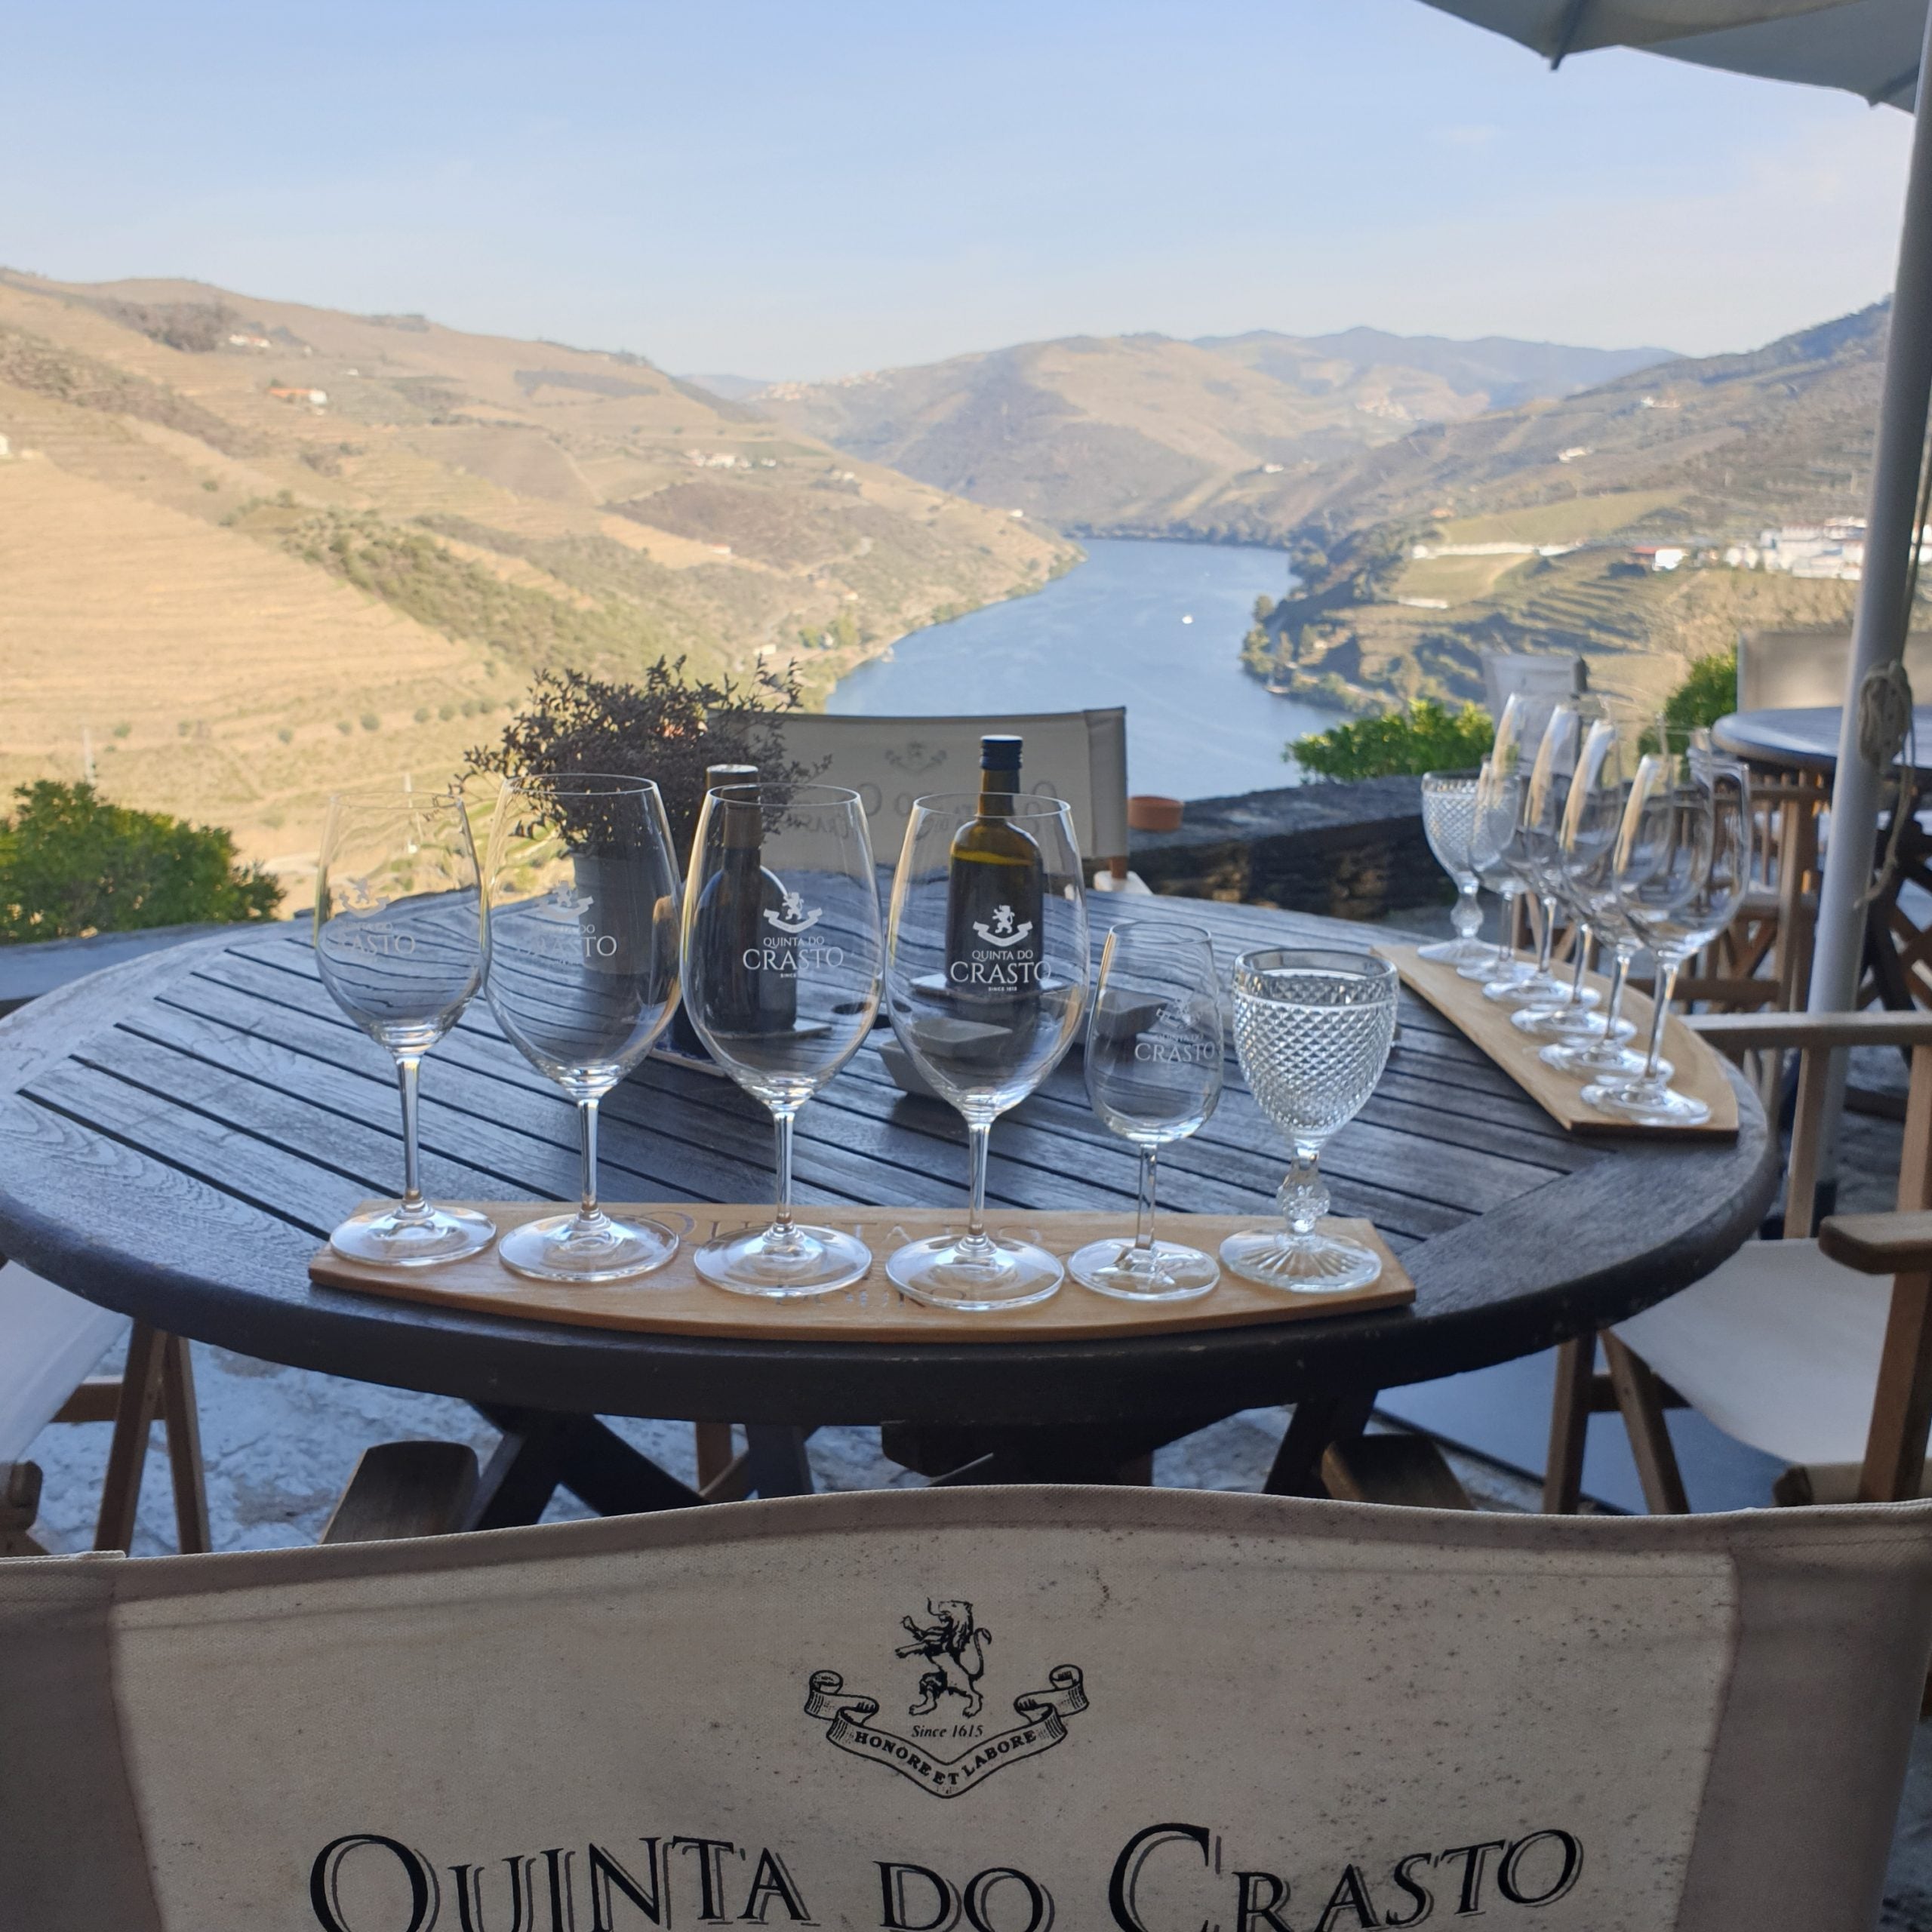 Quinta do Crasto, Douro valley, Portugal